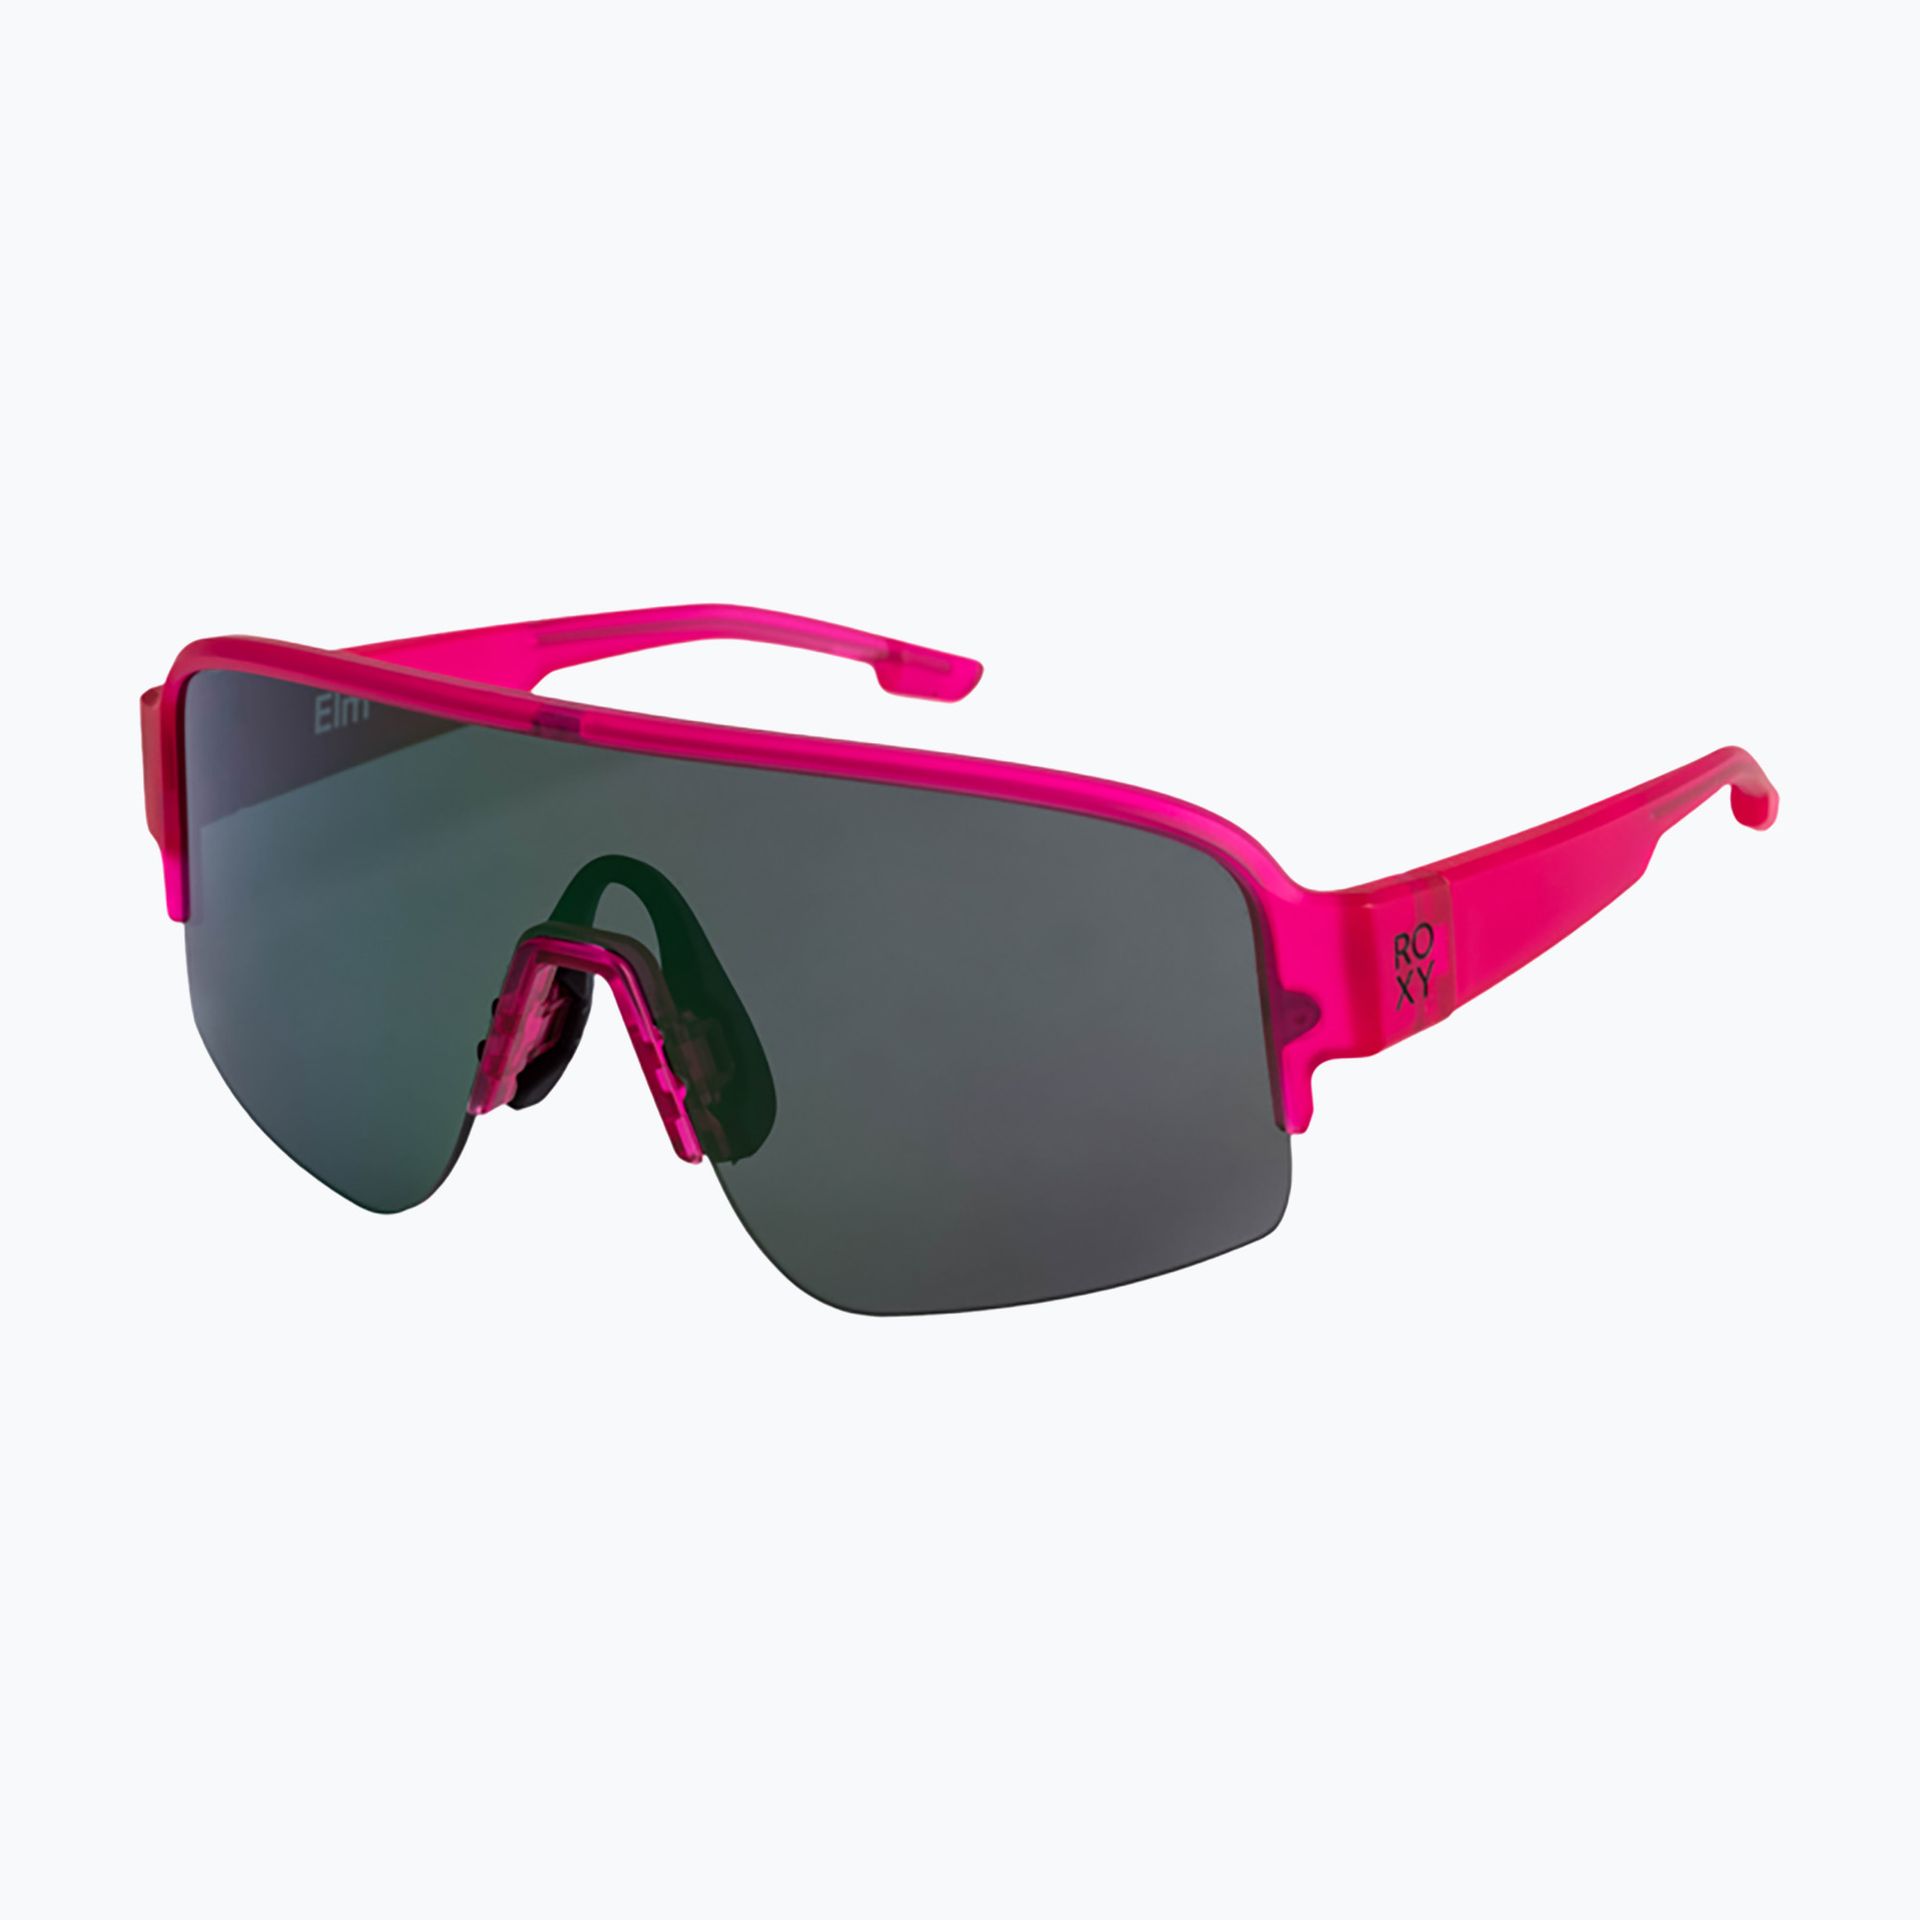 Okulary przeciwsłoneczne damskie ROXY Elm pink/grey | WYSYŁKA W 24H | 30 DNI NA ZWROT